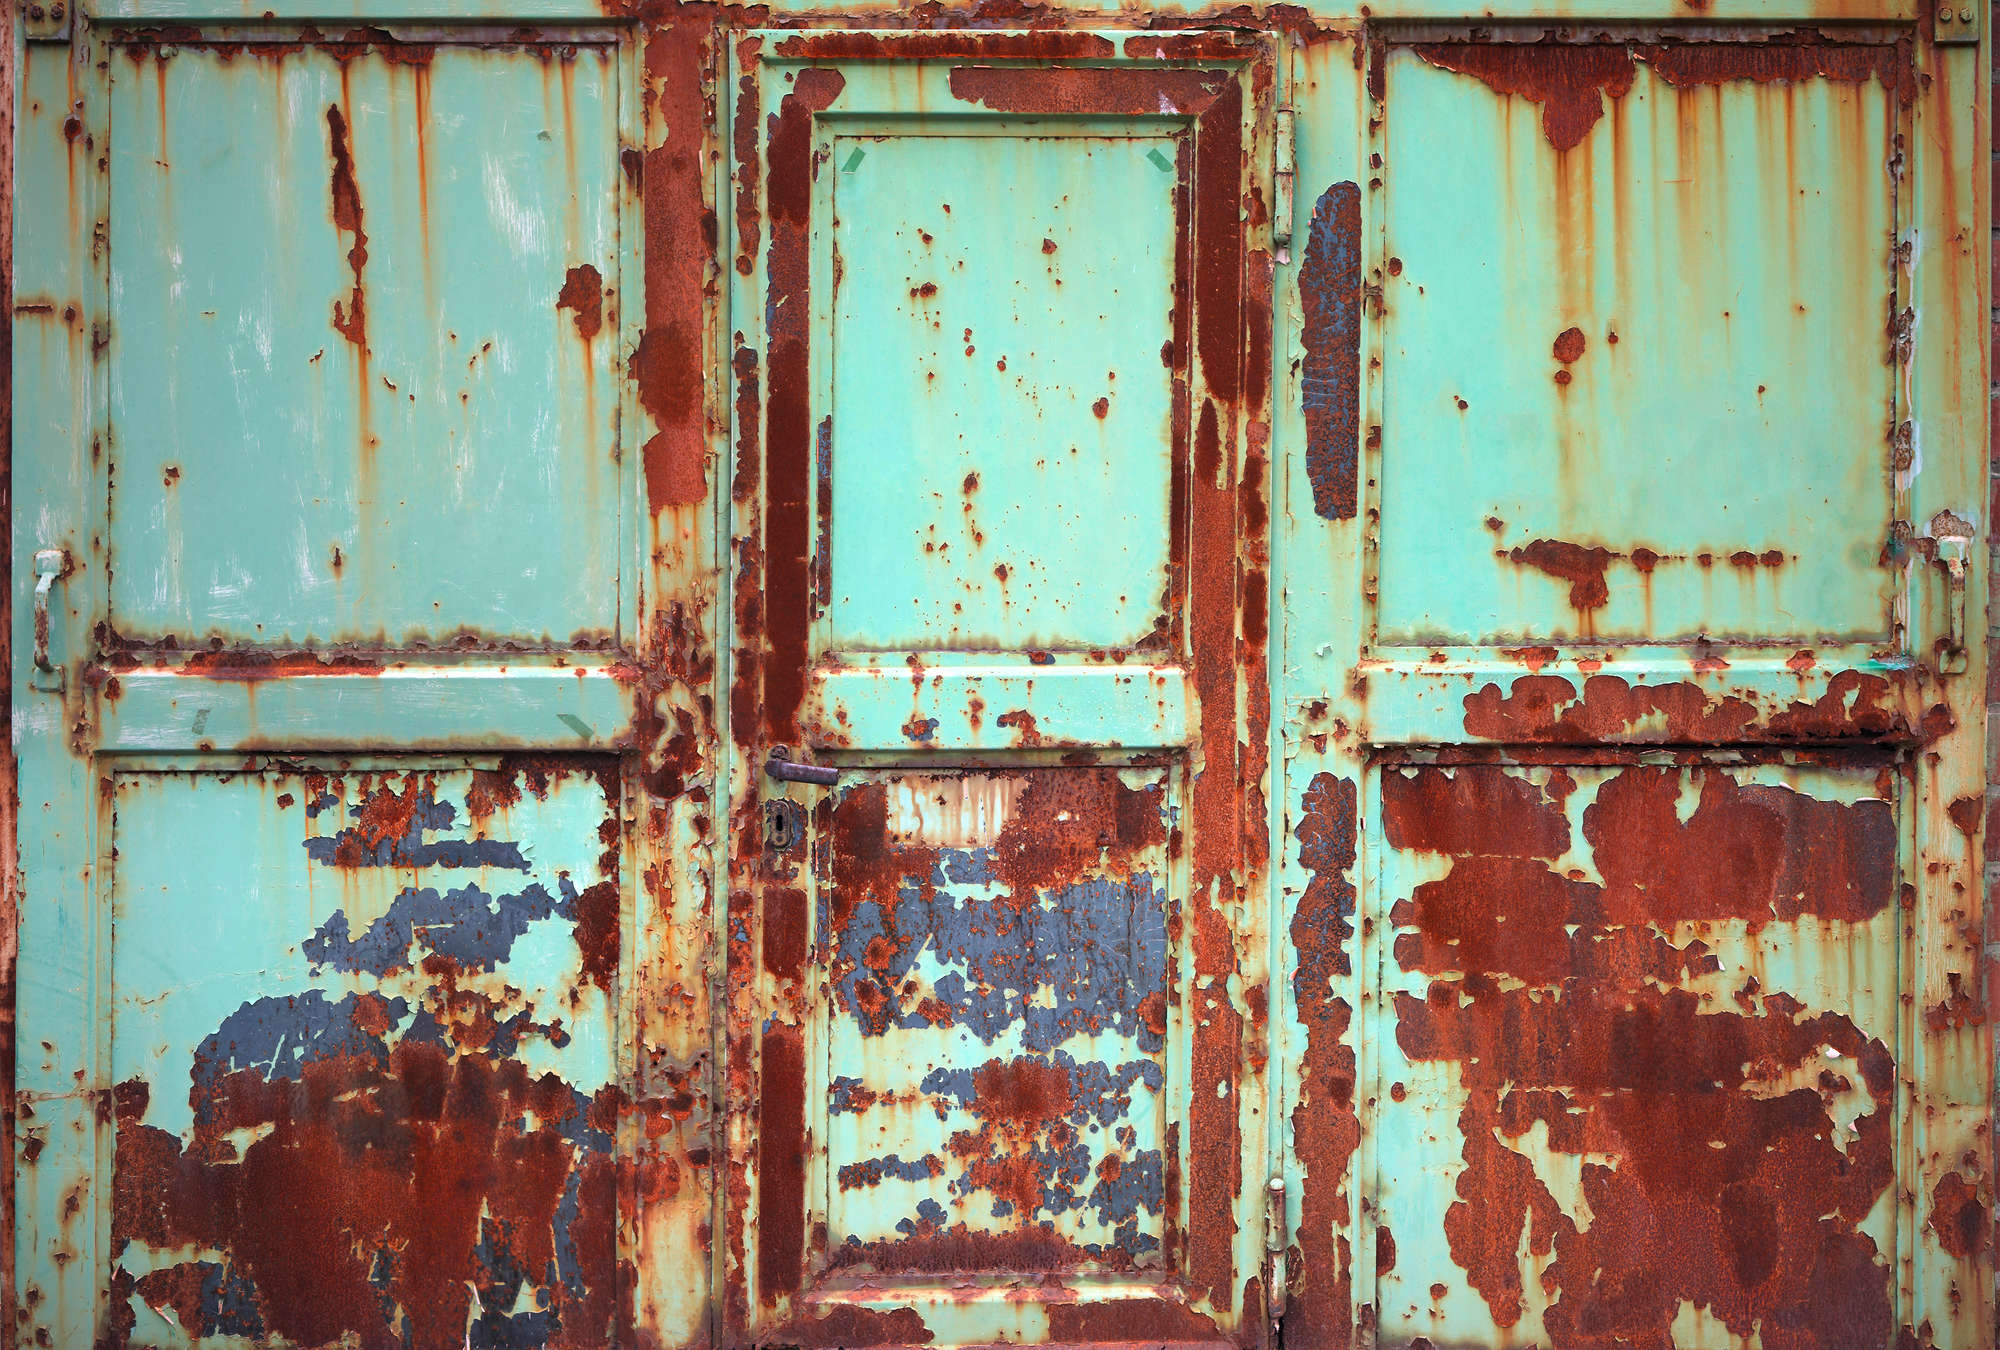             Rust mural with metal door in used look
        